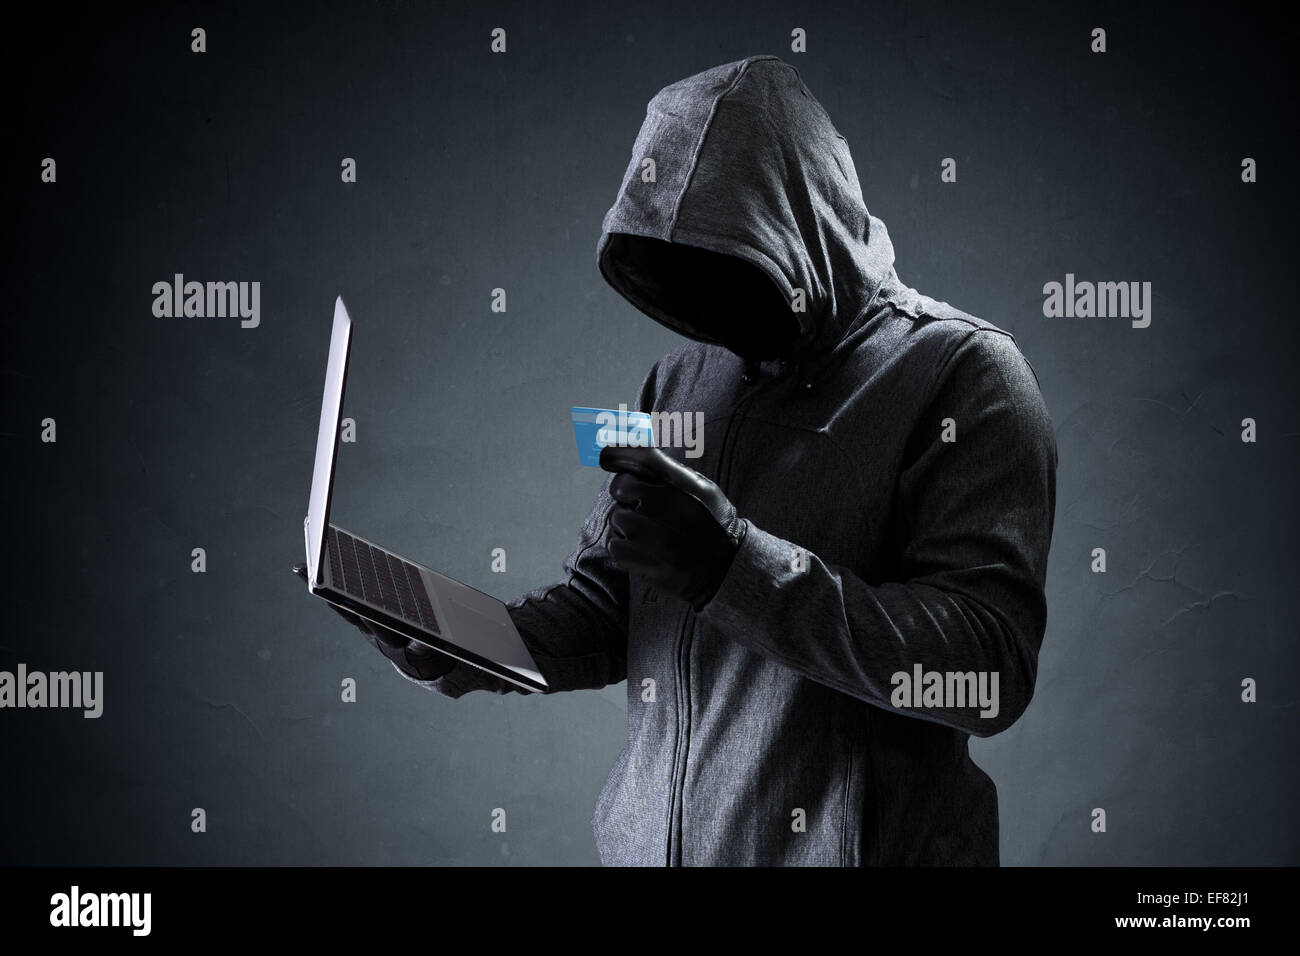 Computer-Hacker mit Kreditkarte Diebstahl von Daten von einem Laptop-Konzept für Netzwerksicherheit, Identitätsdiebstahl und Computerkriminalität Stockfoto